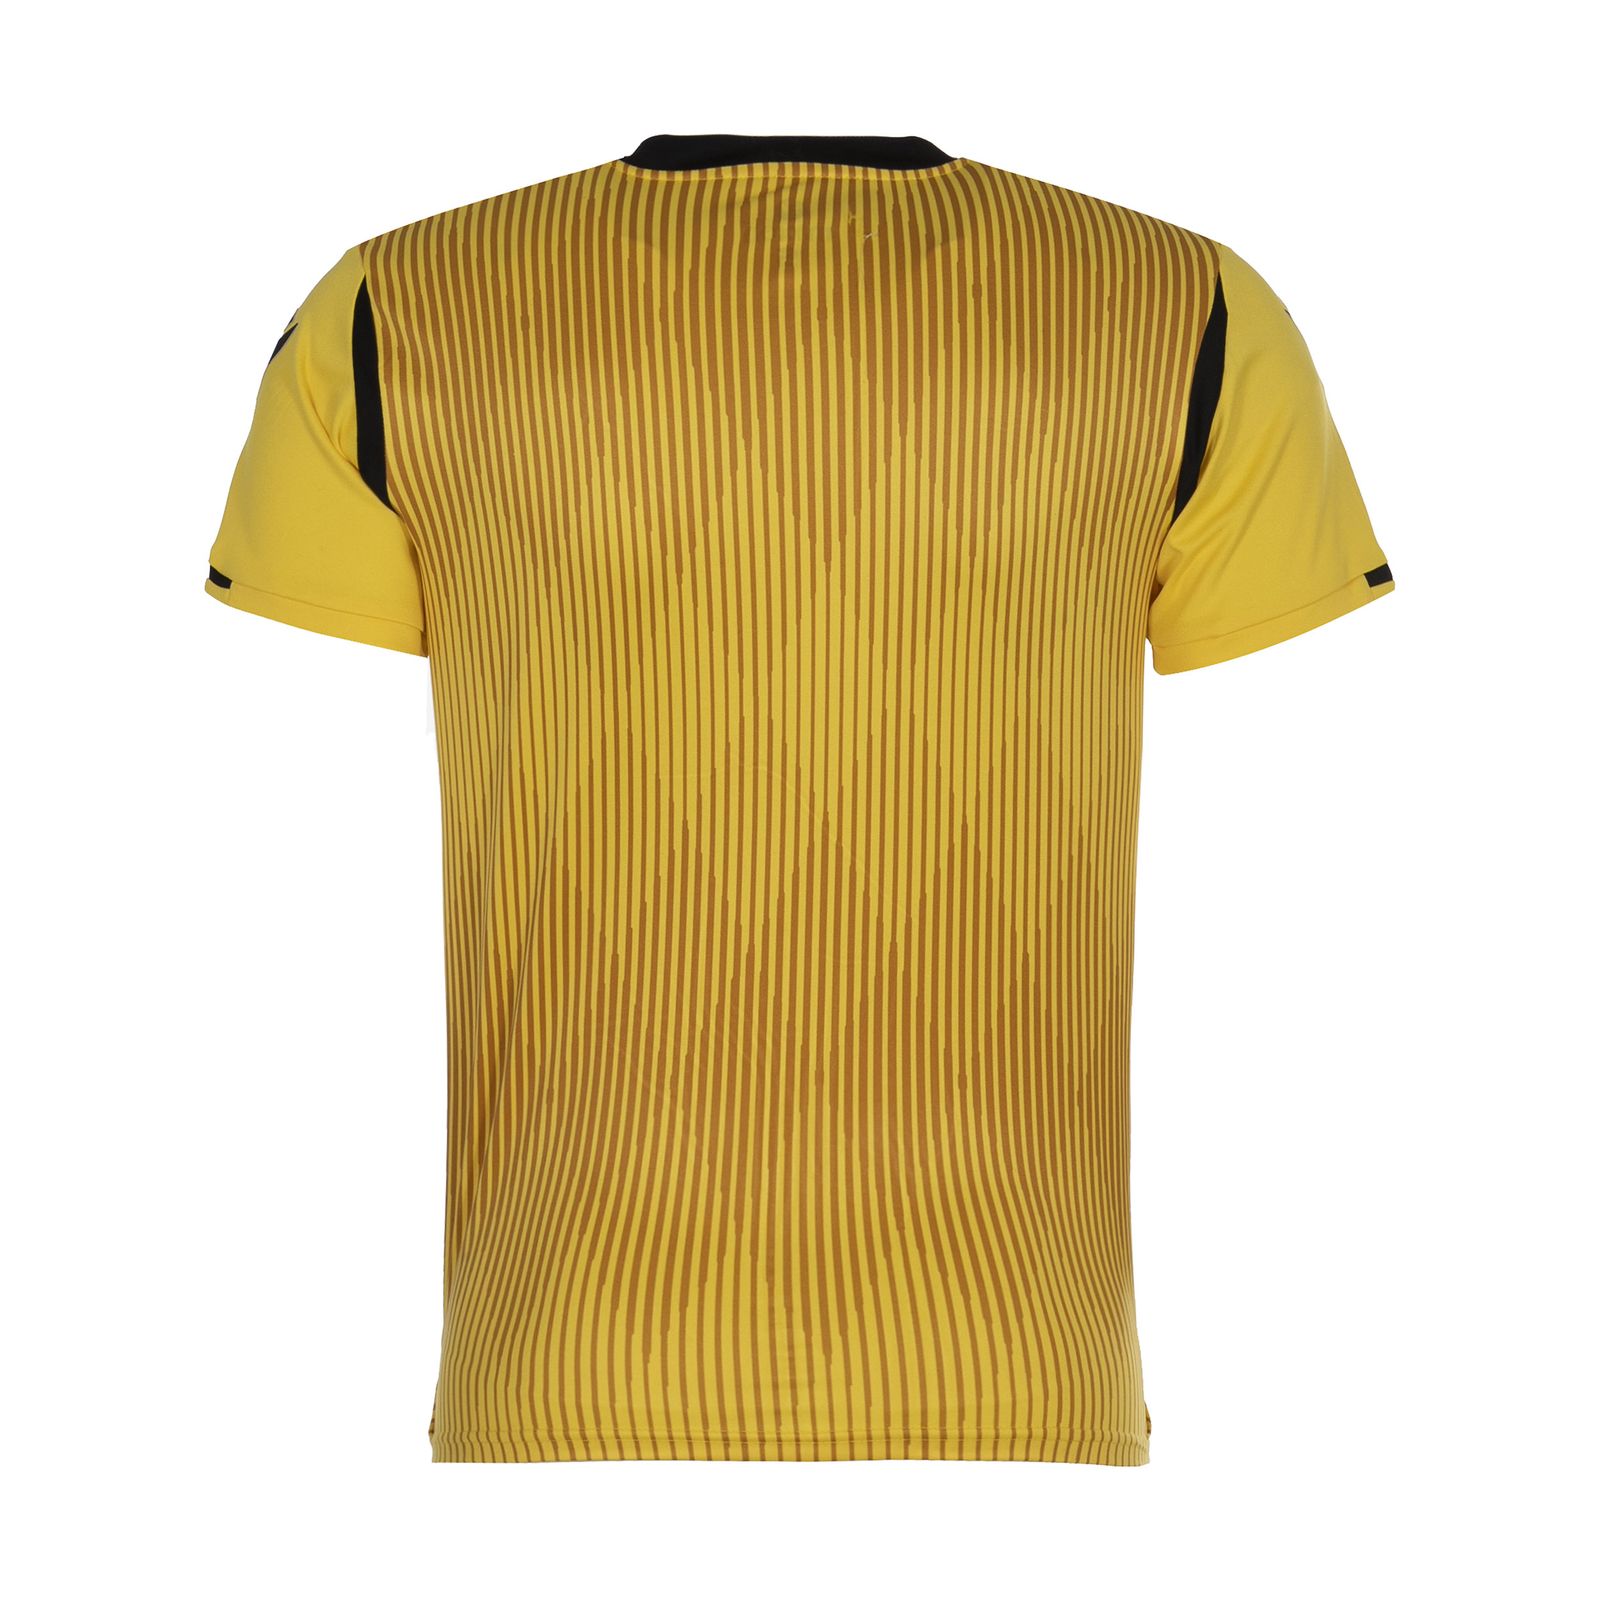  ست تی شرت و شلوارک ورزشی مردانه مکرون مدل فارست رنگ زرد -  - 5